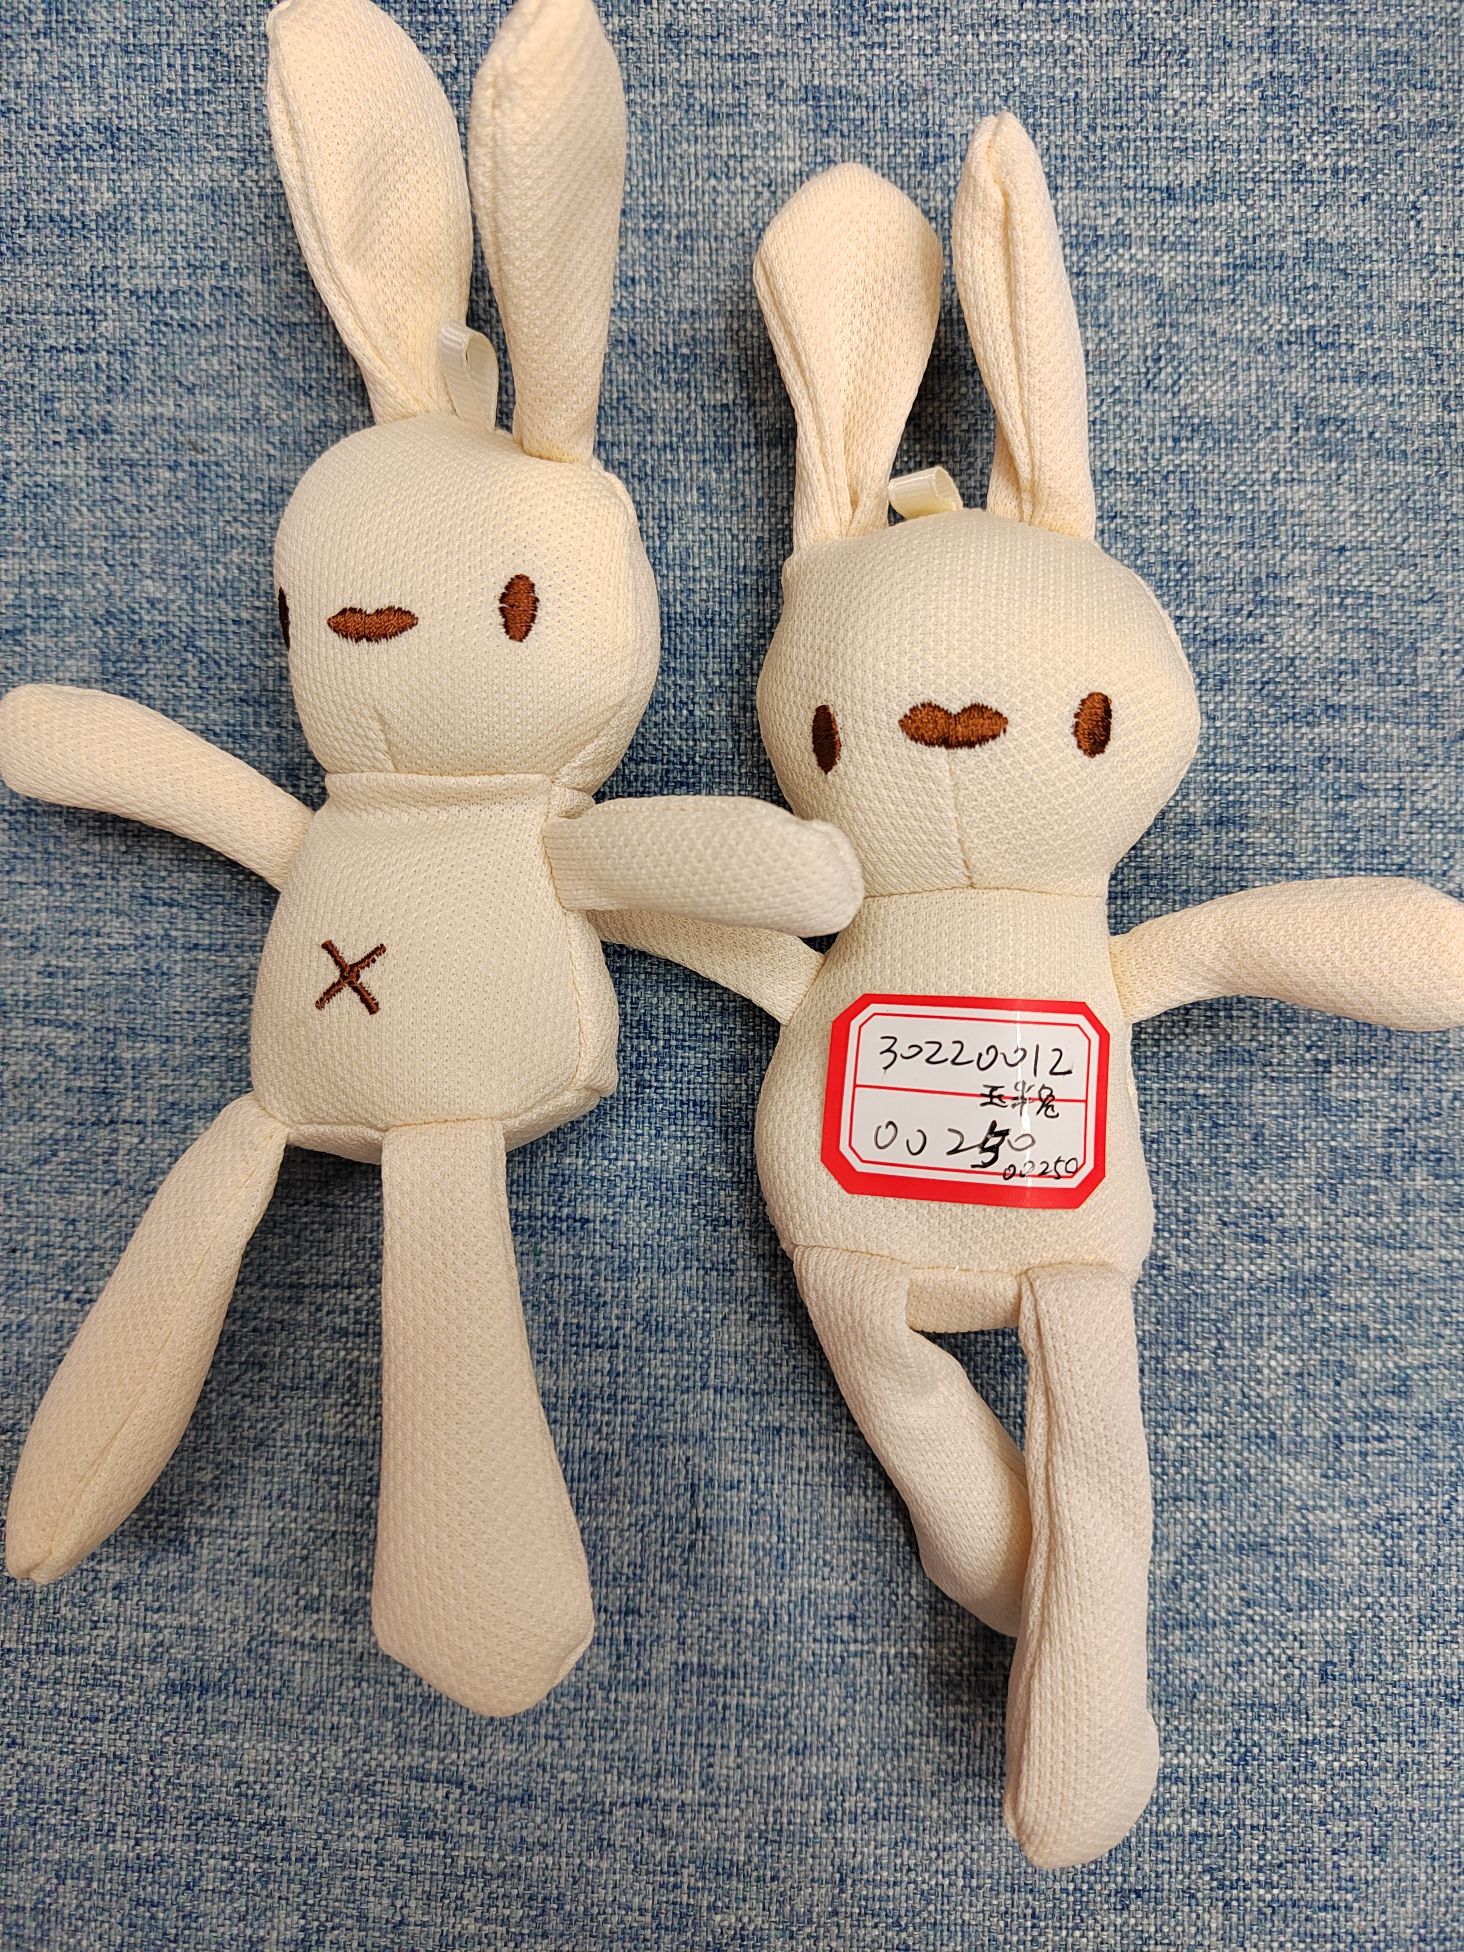 批发零售玉米兔许愿兔韩国绒兔公仔毛绒玩具配件挂件图